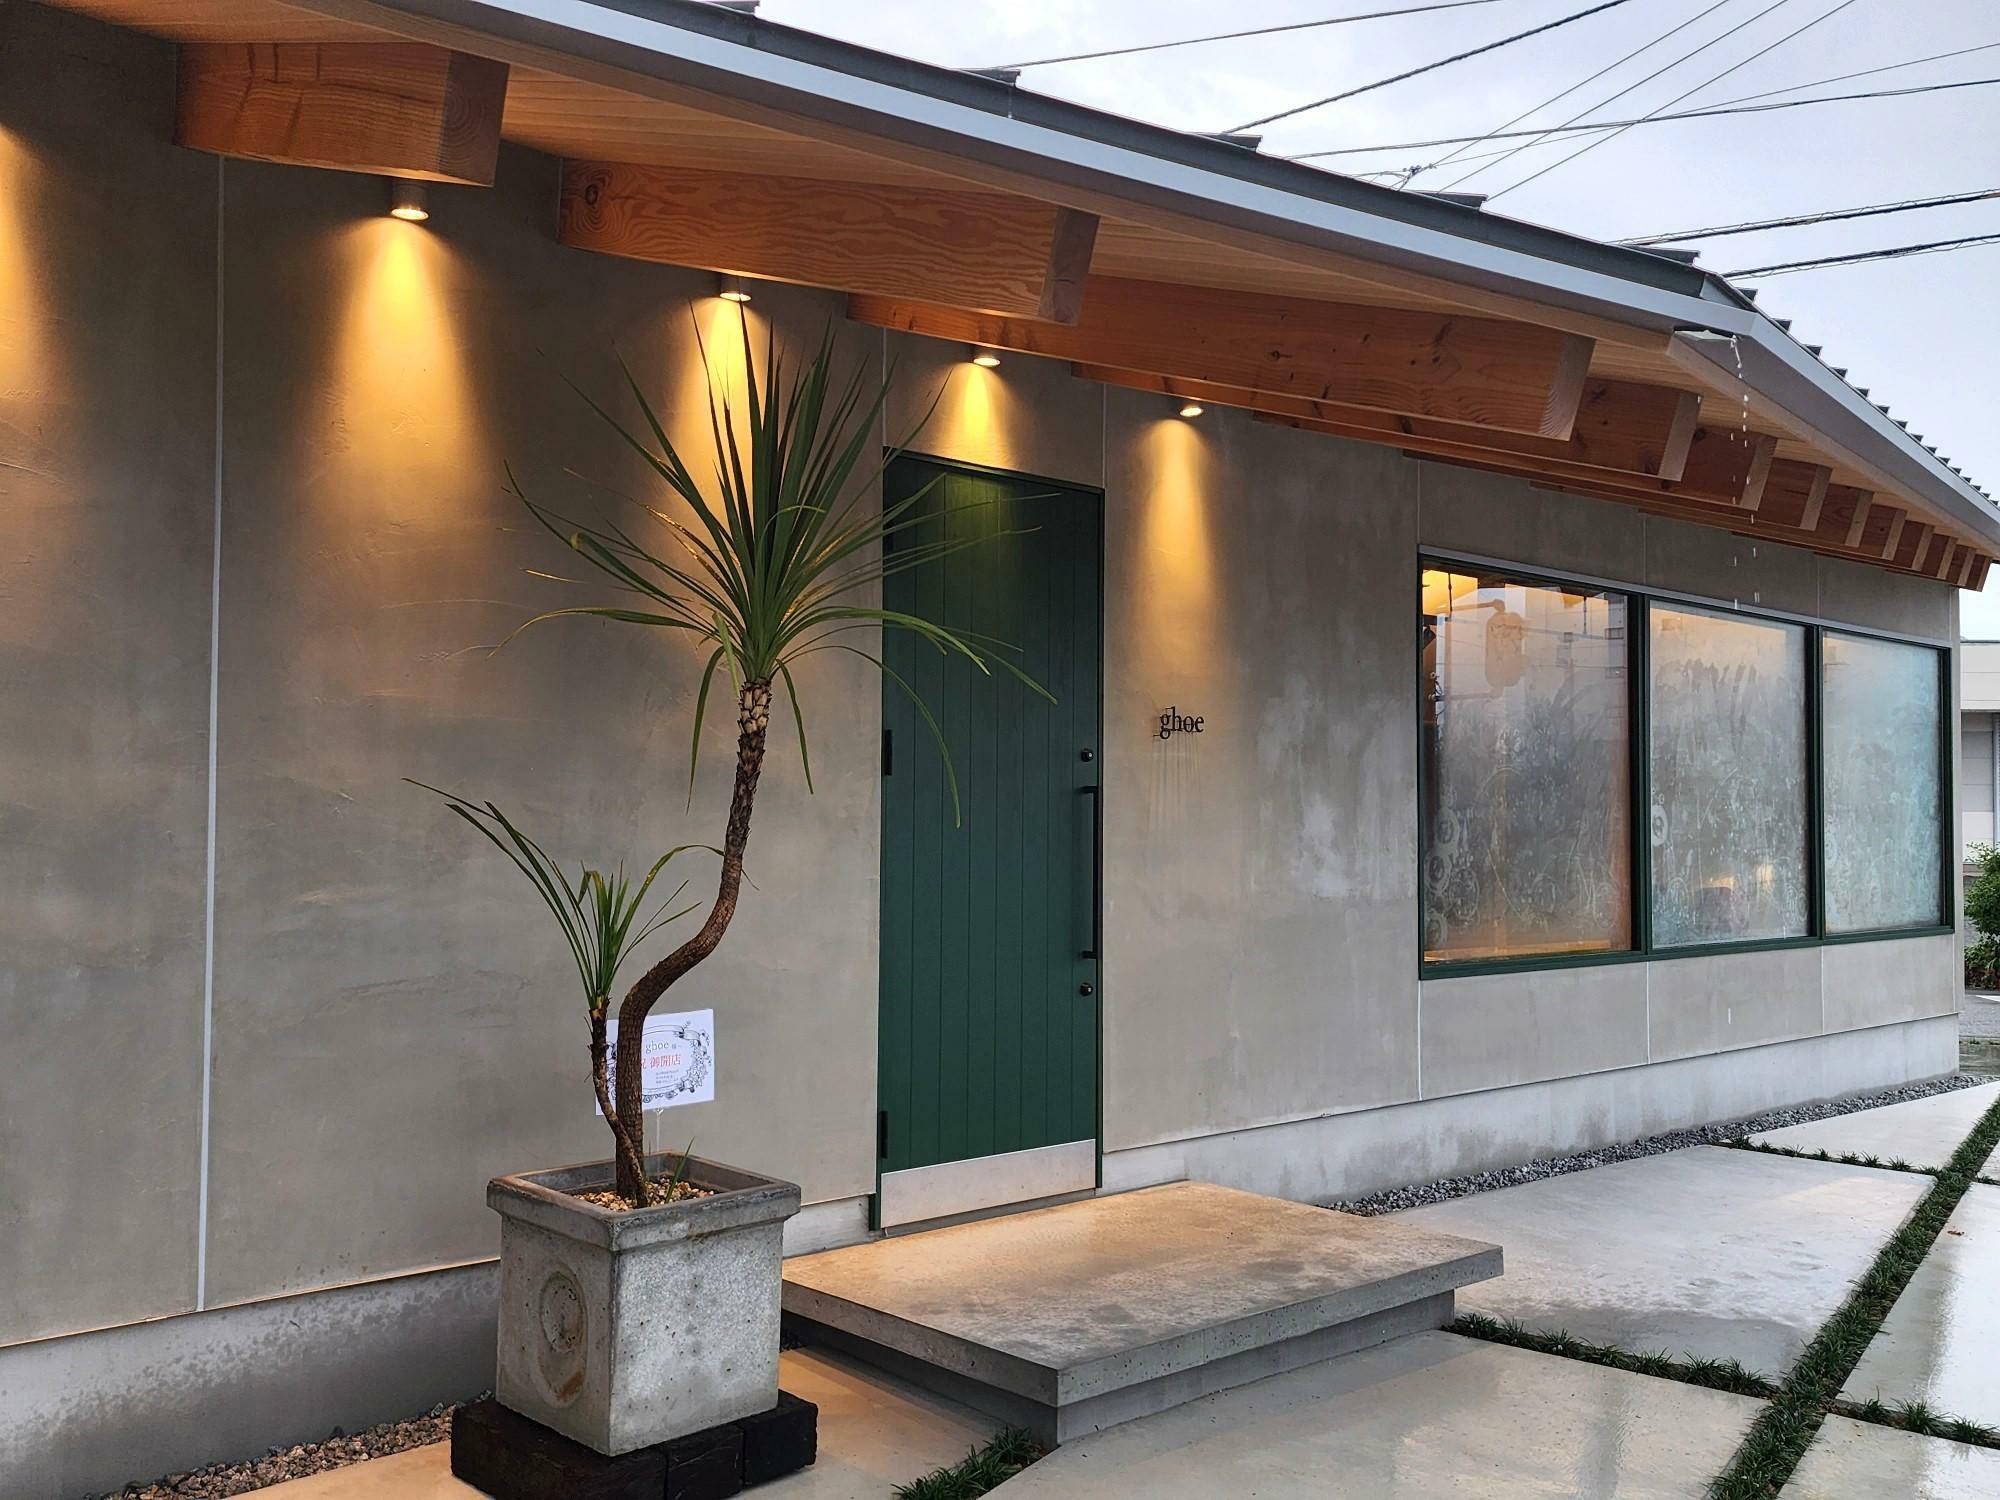 徳島市中島田に移転オープンした革工房「ghoe（ゴエ）」店舗外観。